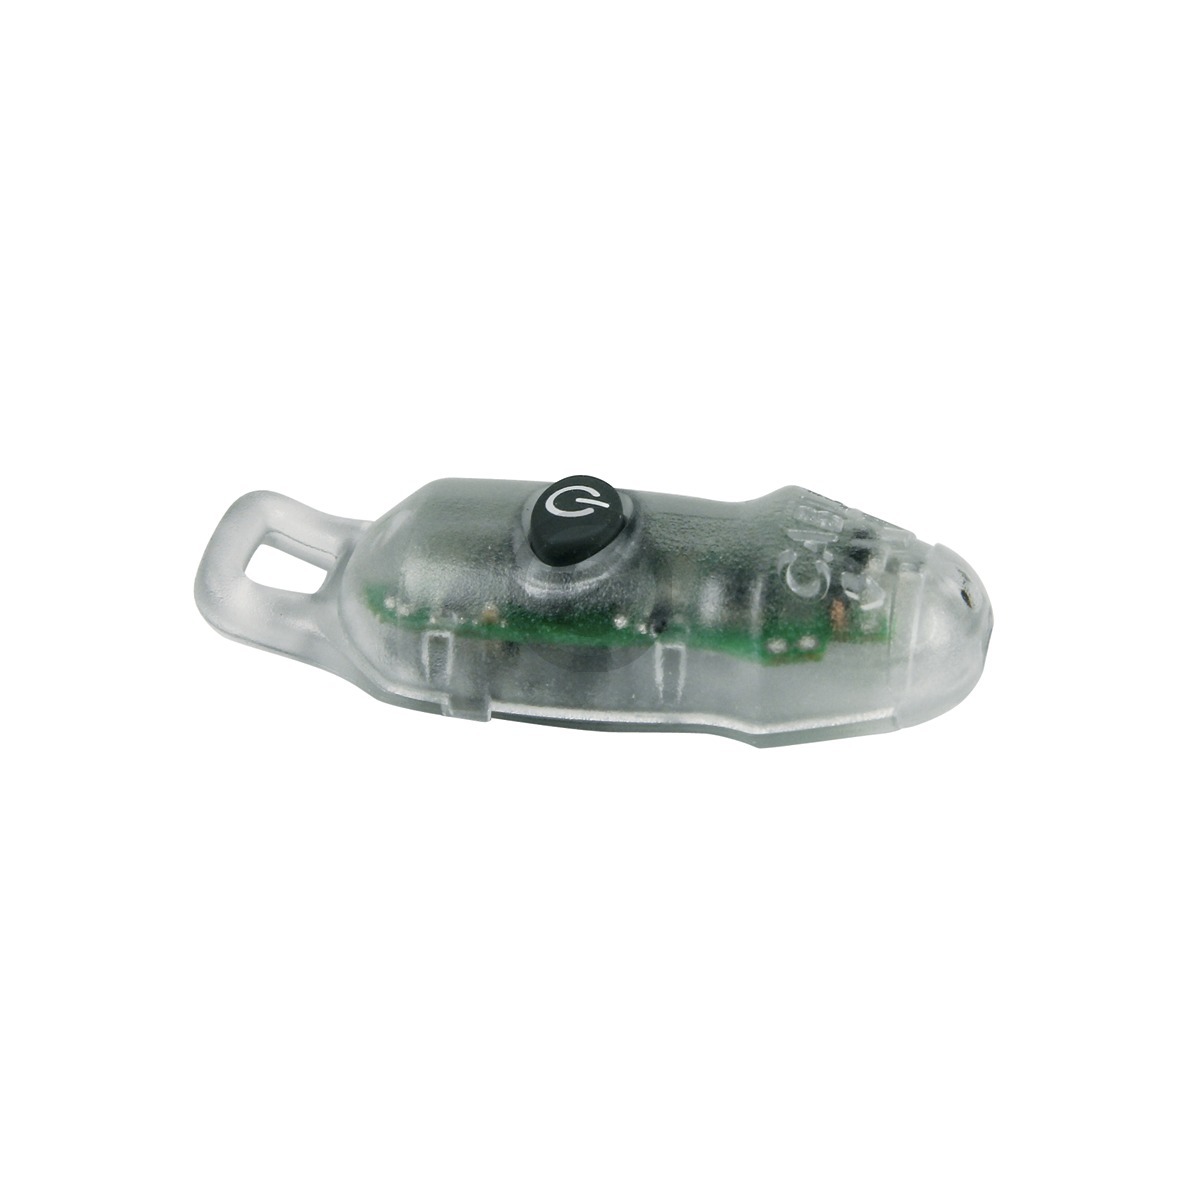 Werkzeug-SystemClip NWS 819-4 E-Detektor für Wechselspannung mit Taschenlampe